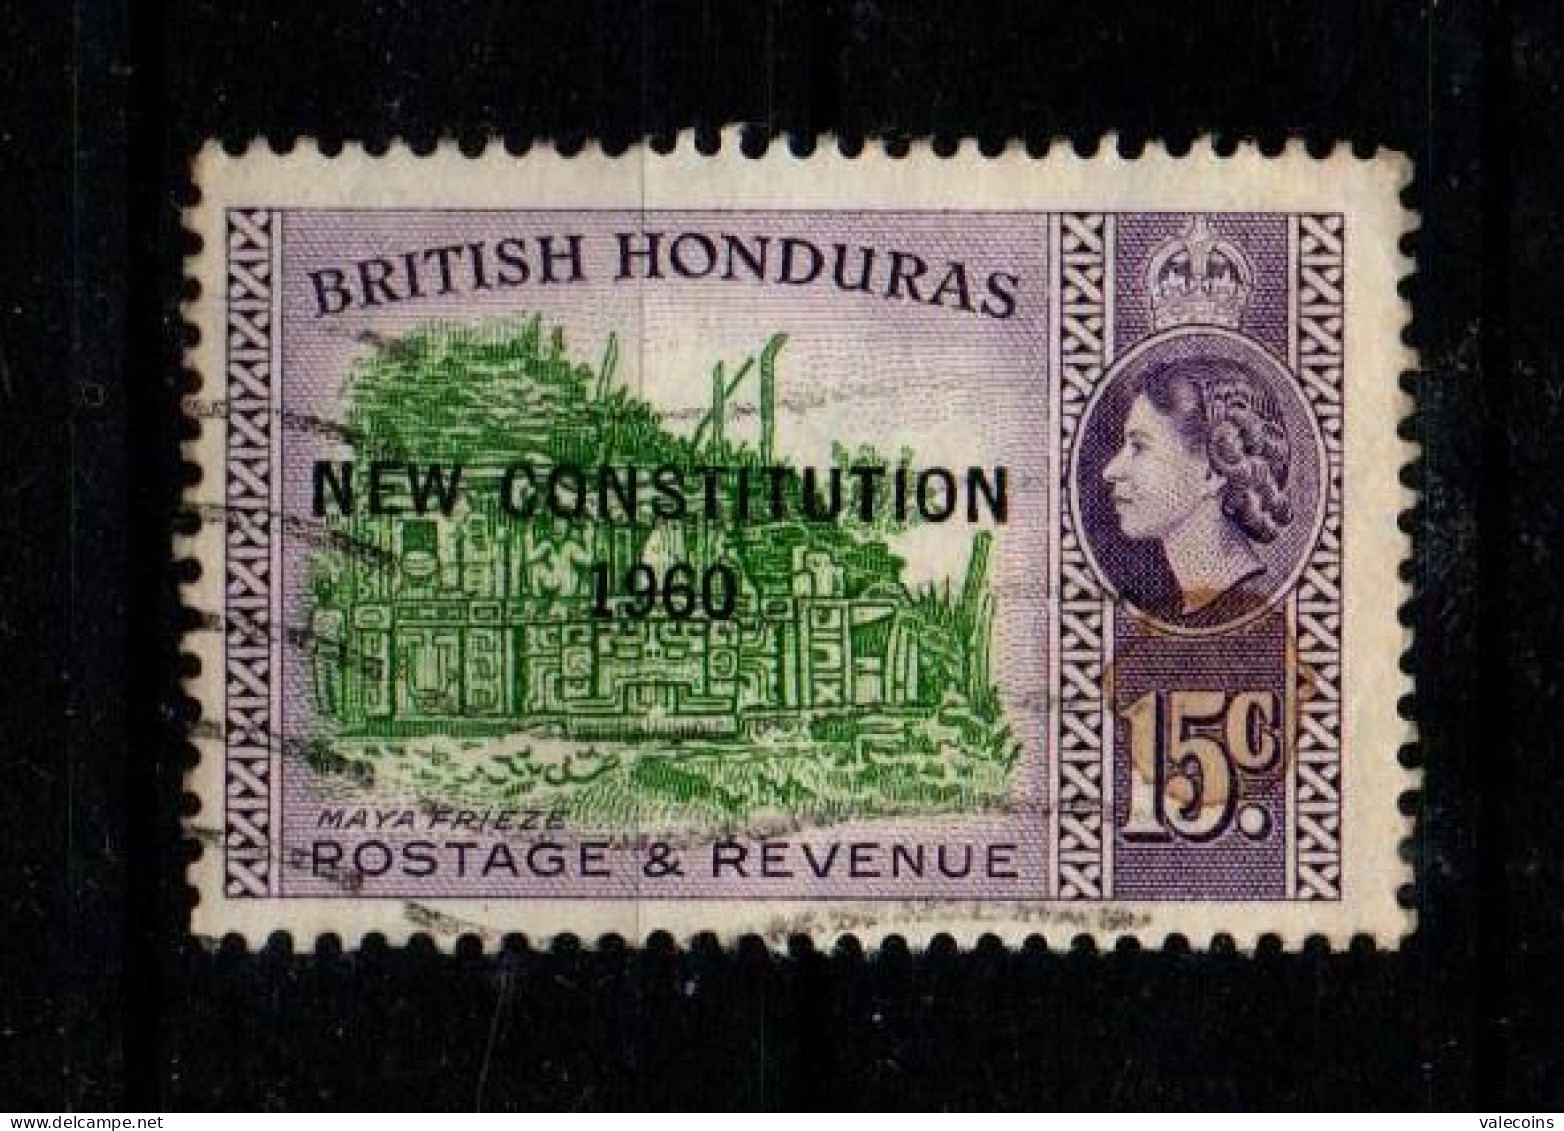 BRITISH HONDURAS (BELIZE) - 1961 - 15 Cent - New Constitution 1960 - Queen Elizabewth II - Used Stamp         MyRef:L - British Honduras (...-1970)